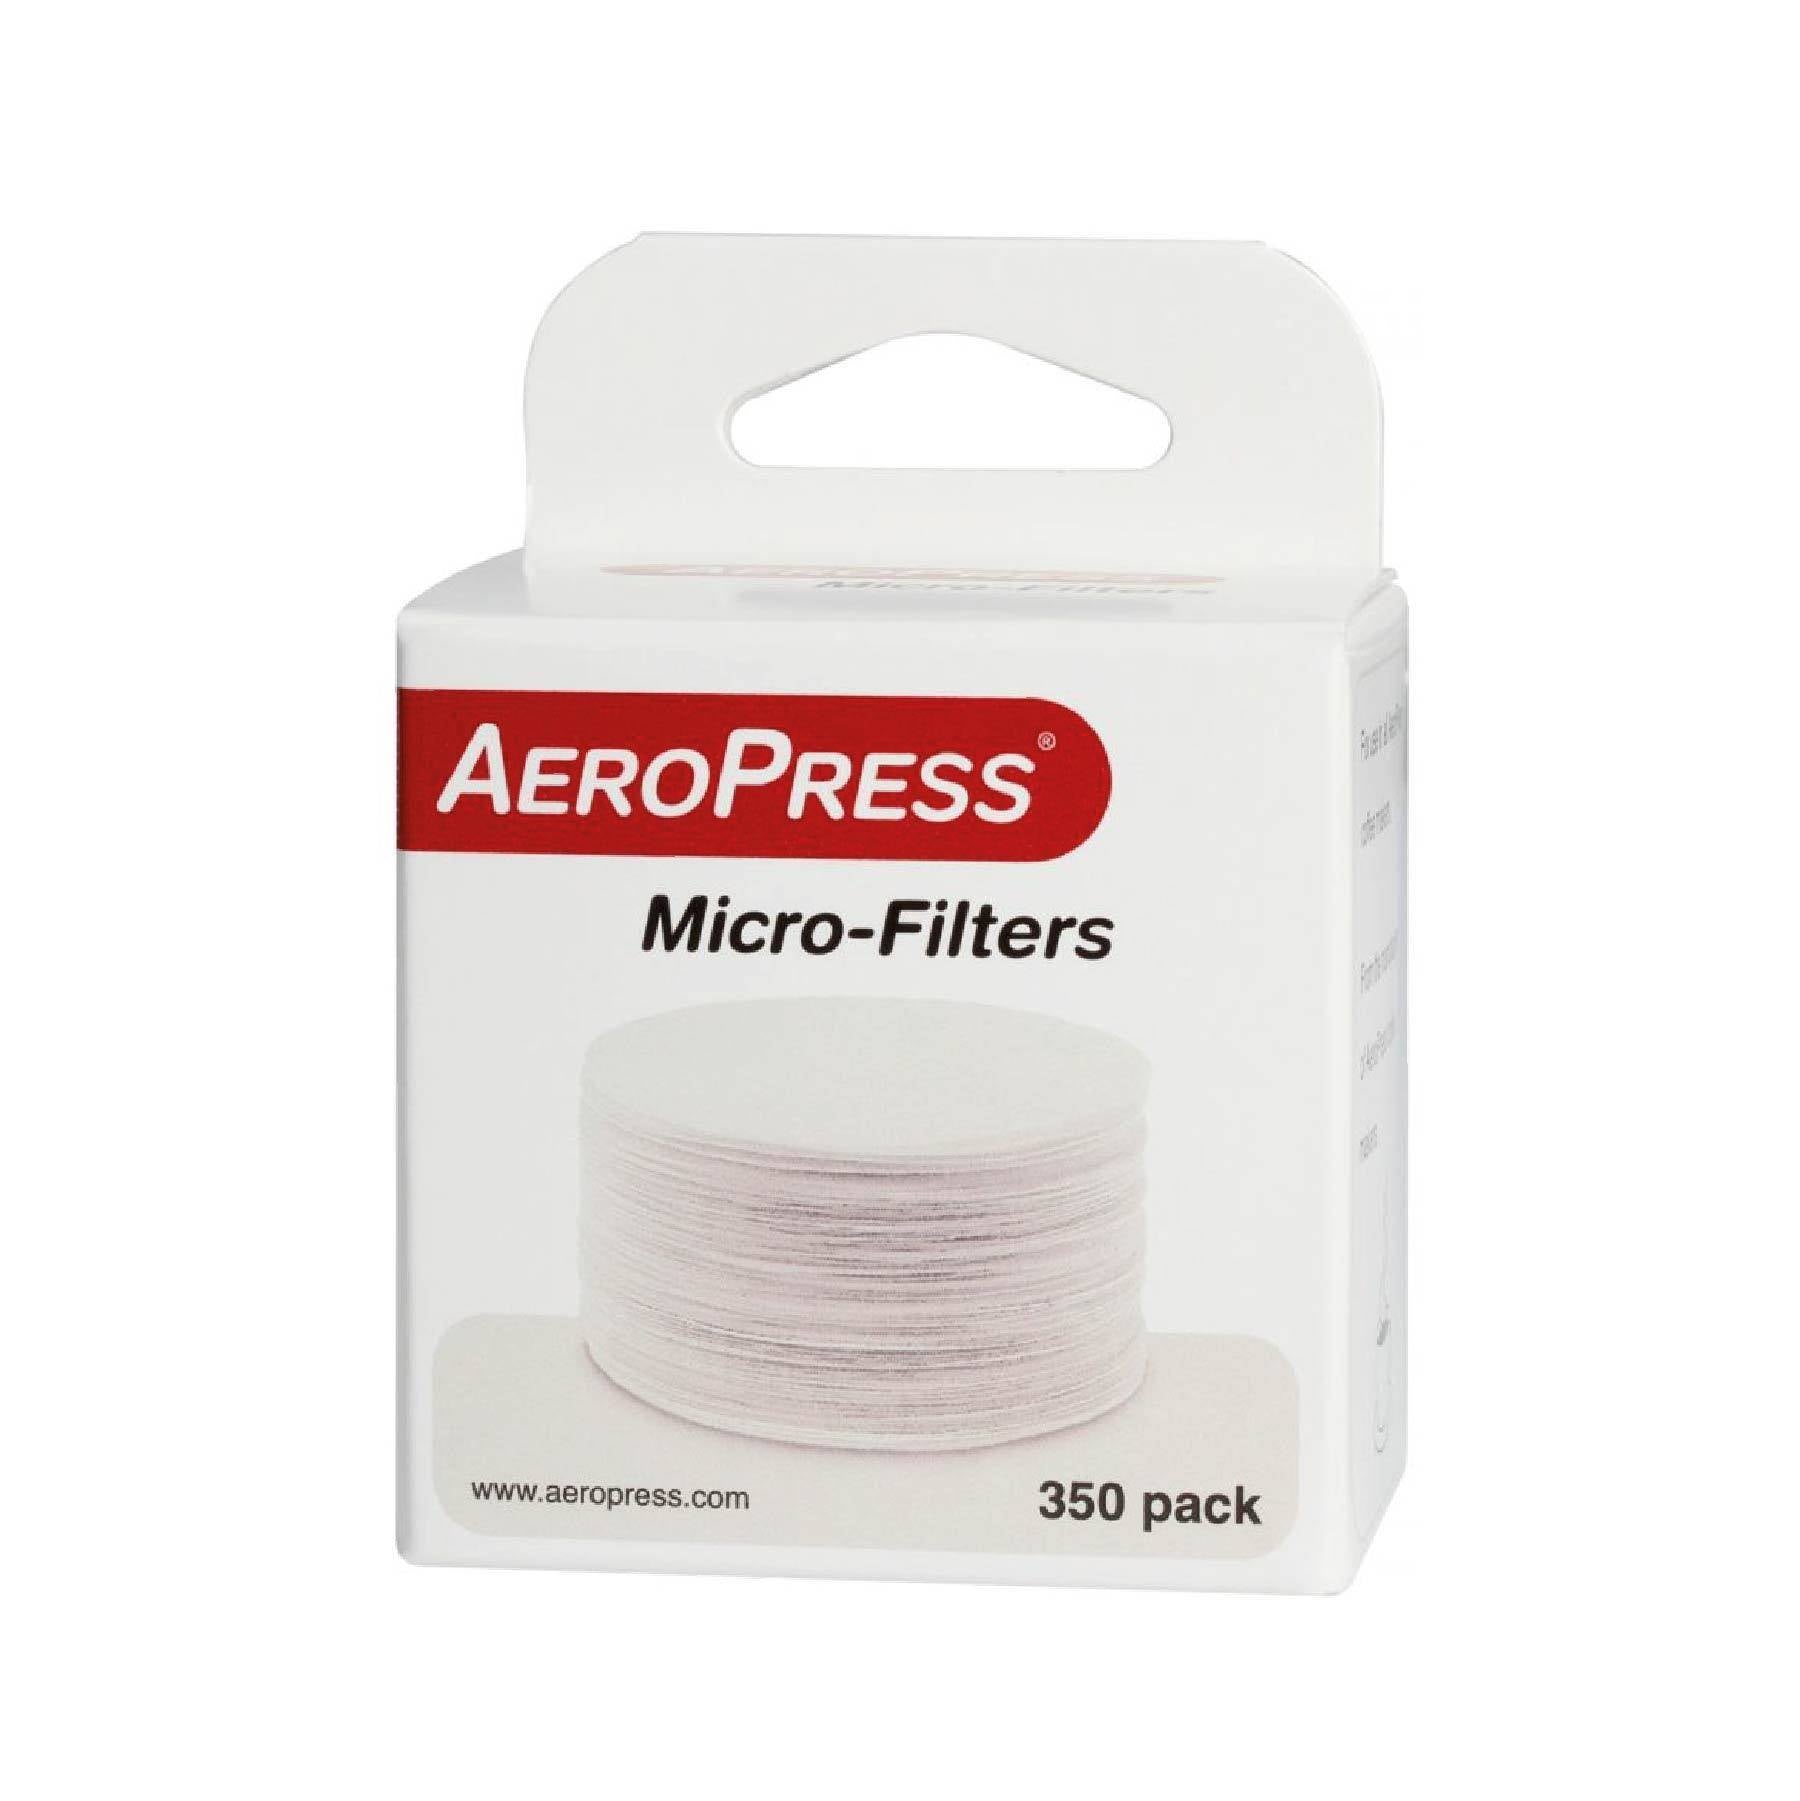 Microfiltros para Aeropress - PERGAMINO Colombia